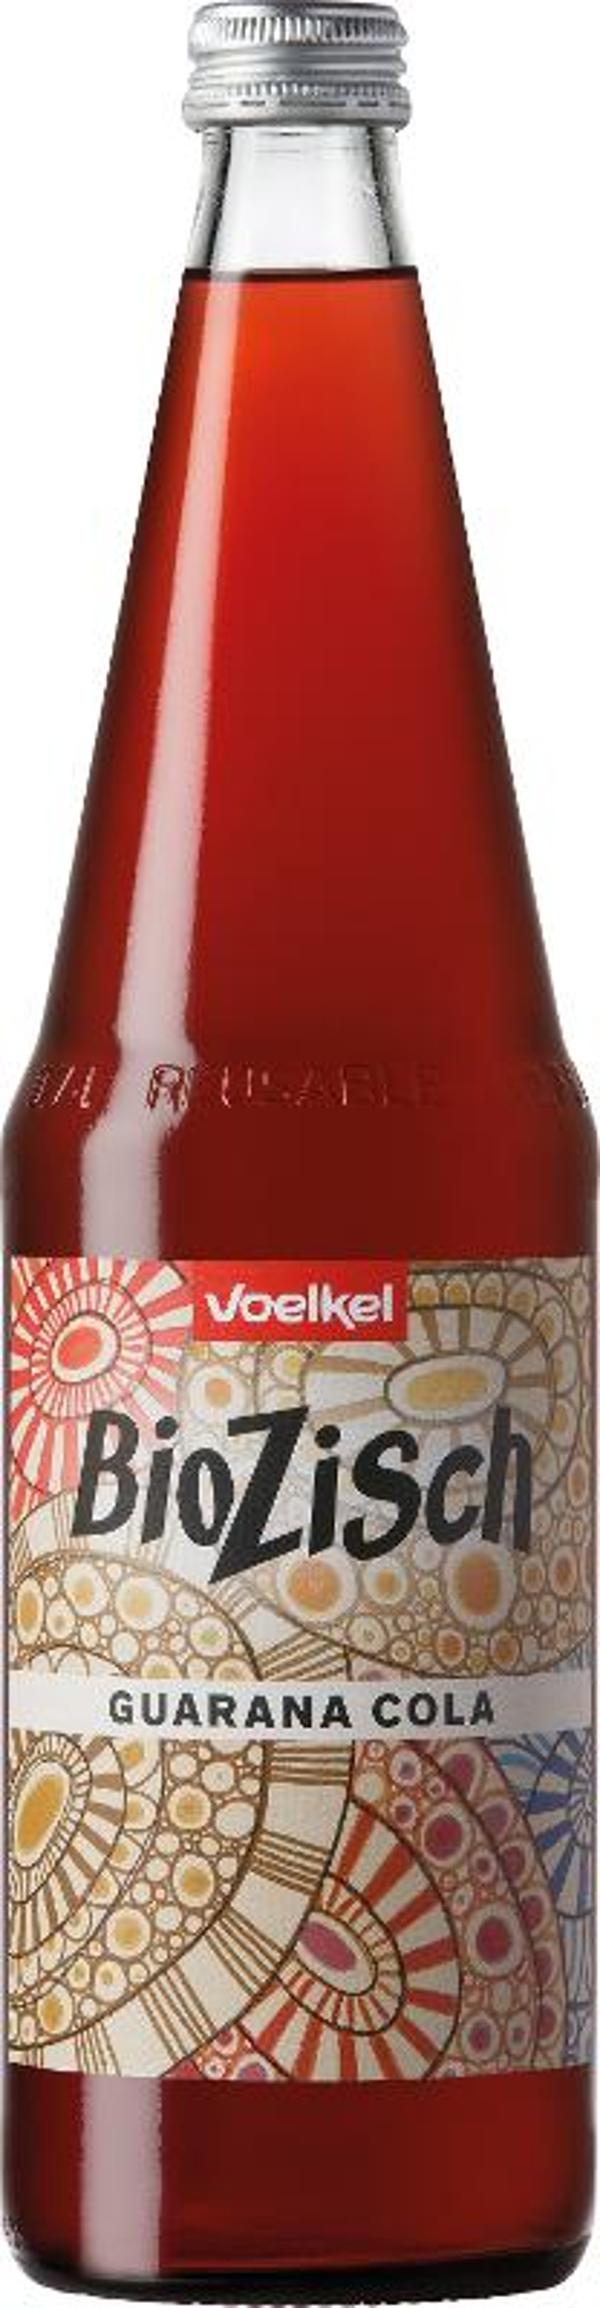 Produktfoto zu BioZisch Guarana Cola 0,7 l  Voelkel